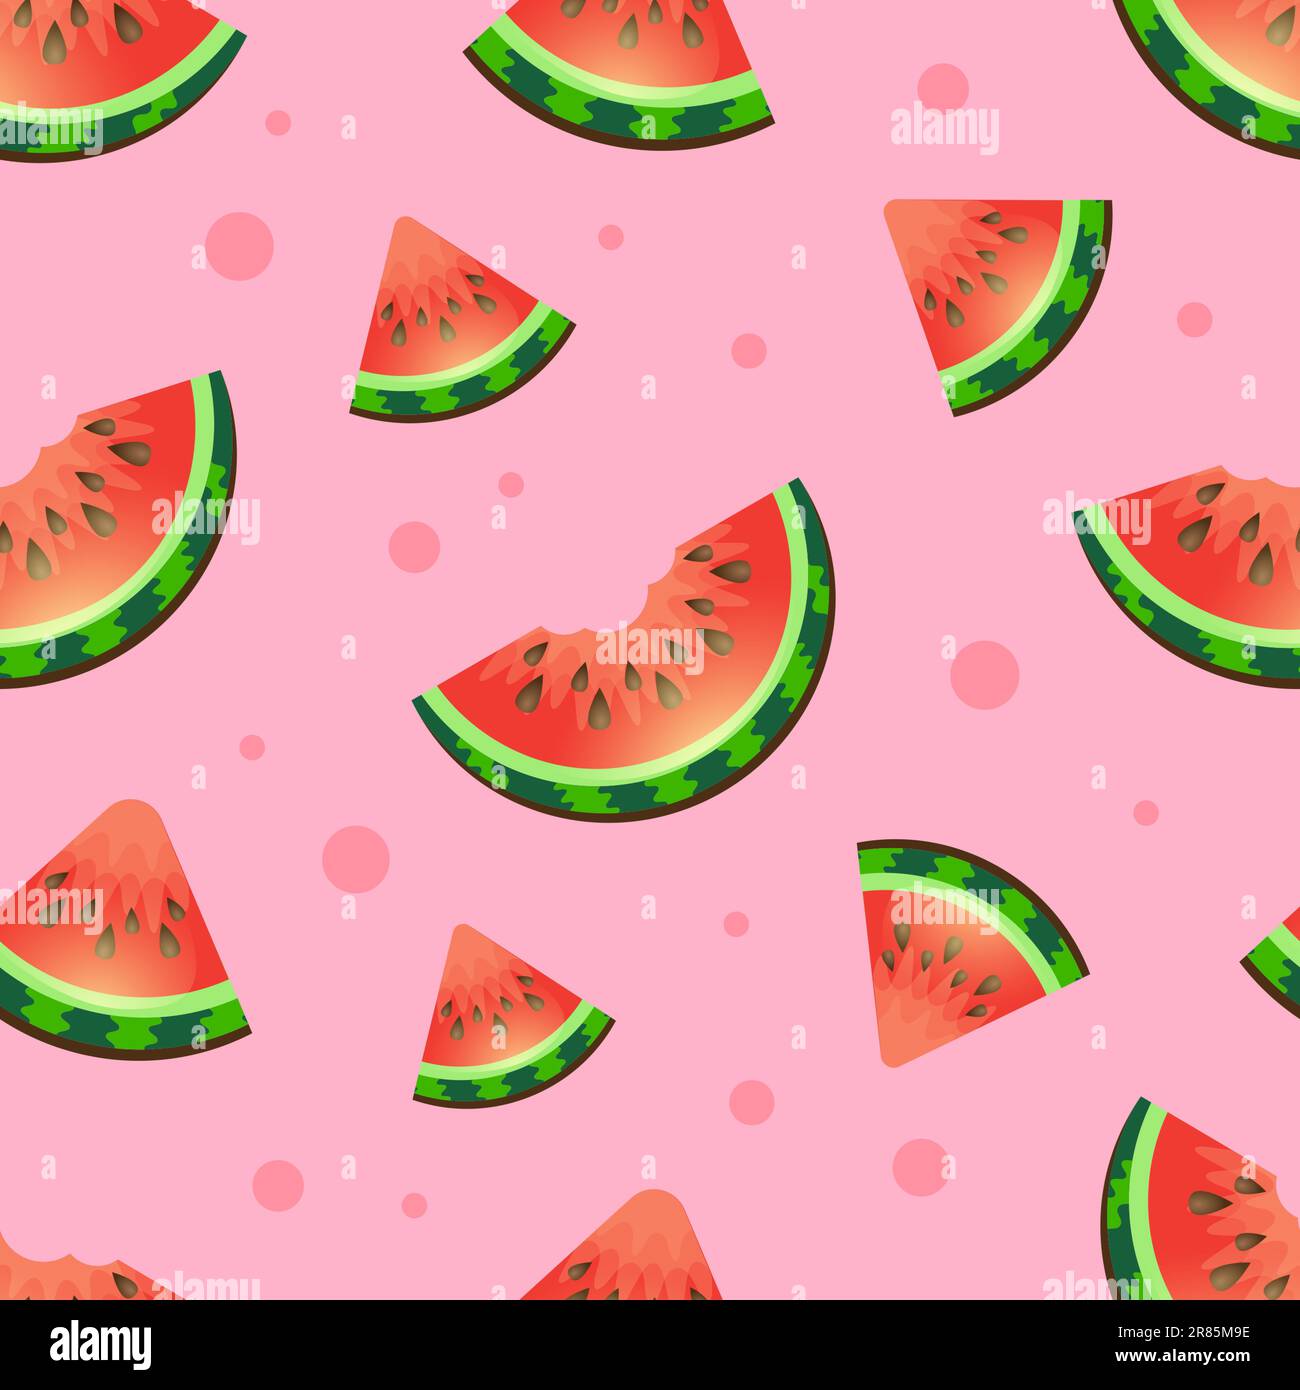 Nahtloses Wassermelonenmuster auf pinkfarbenem Hintergrund. Vektorhintergrund mit Wassermelonenscheiben. Süßes, nahtloses Vektormuster mit Wassermelonen und Nadel Stock Vektor